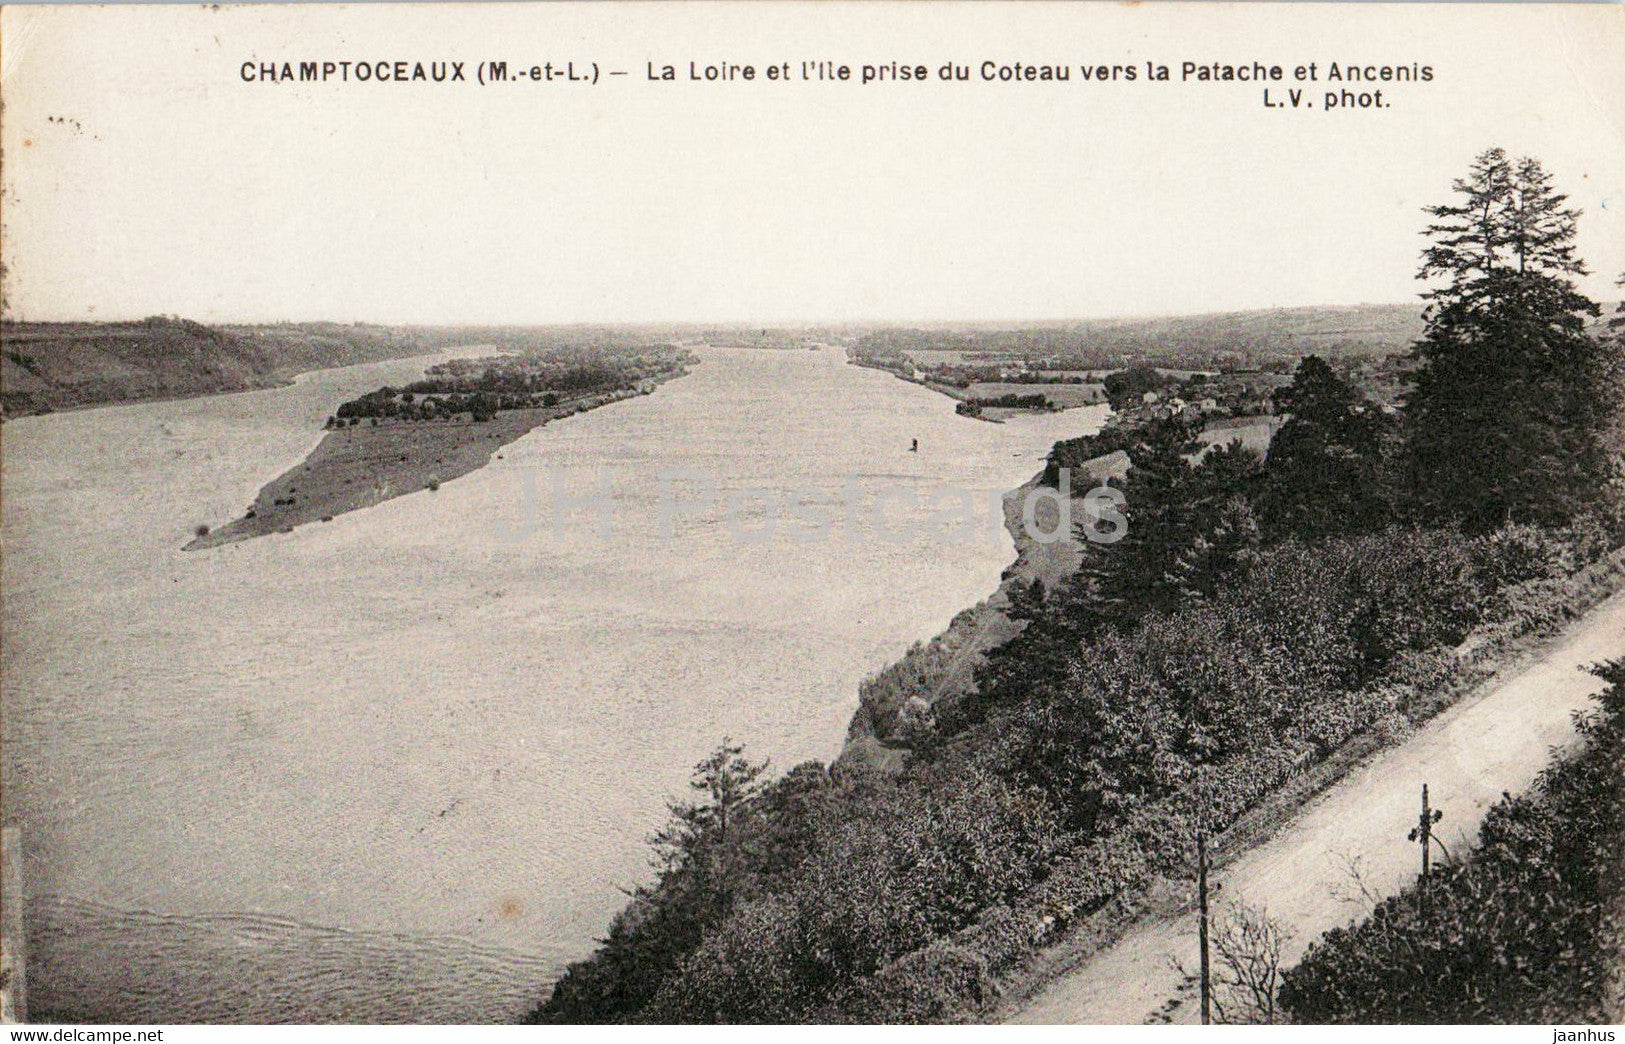 Champtoceaux - La Loire vers le Pont metallique et Oudon - bridge - old postcard - 1934 - France - used - JH Postcards